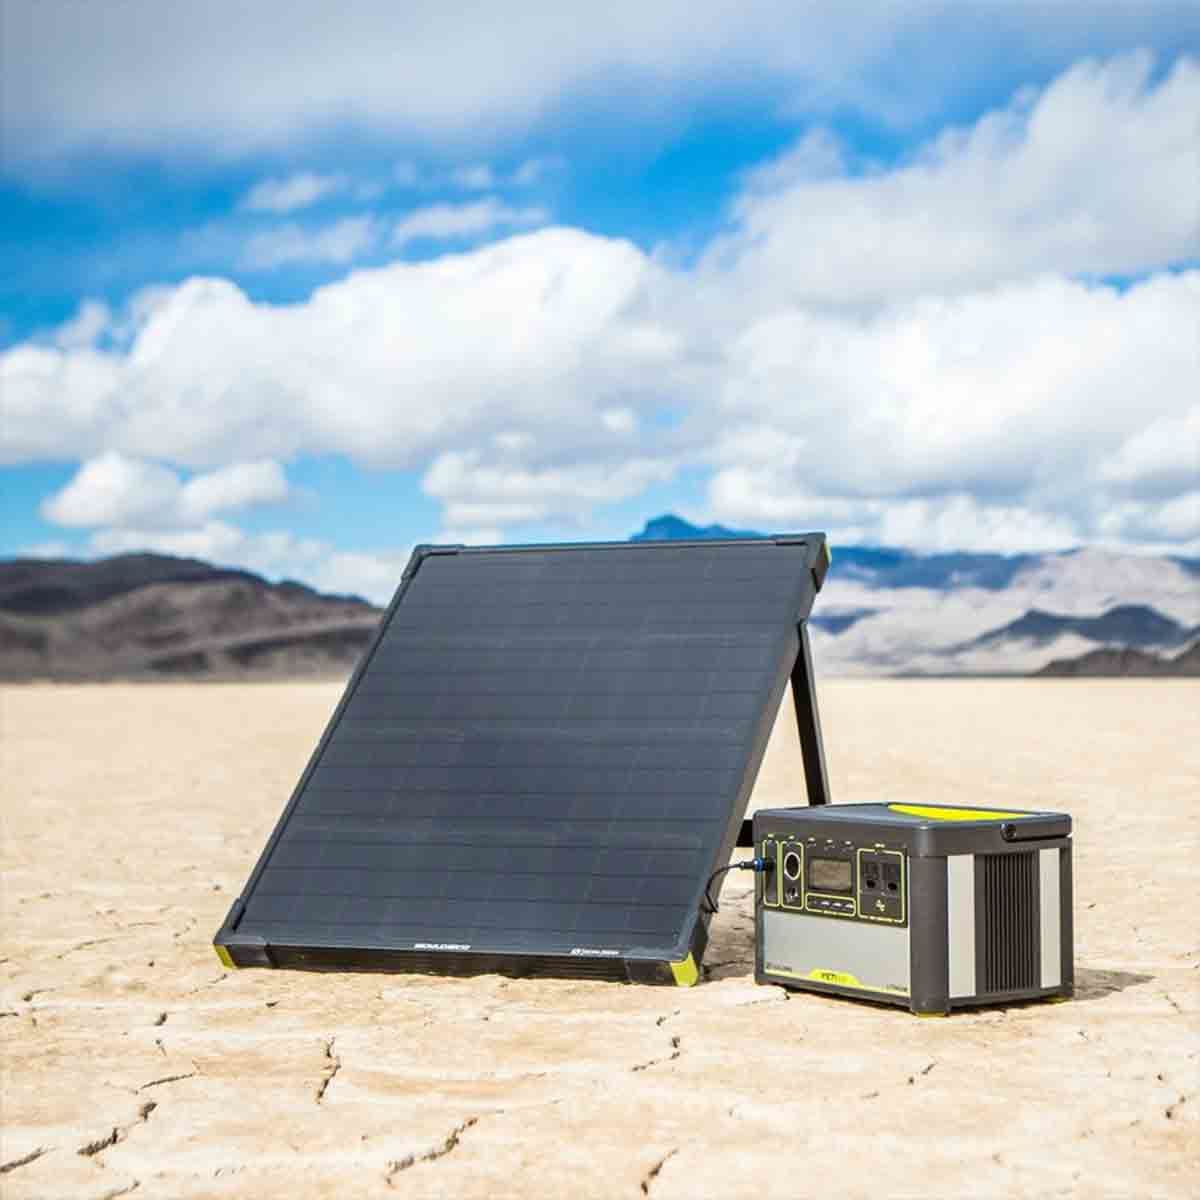 Goal zero panneau solaire boulder 50 watts en situation